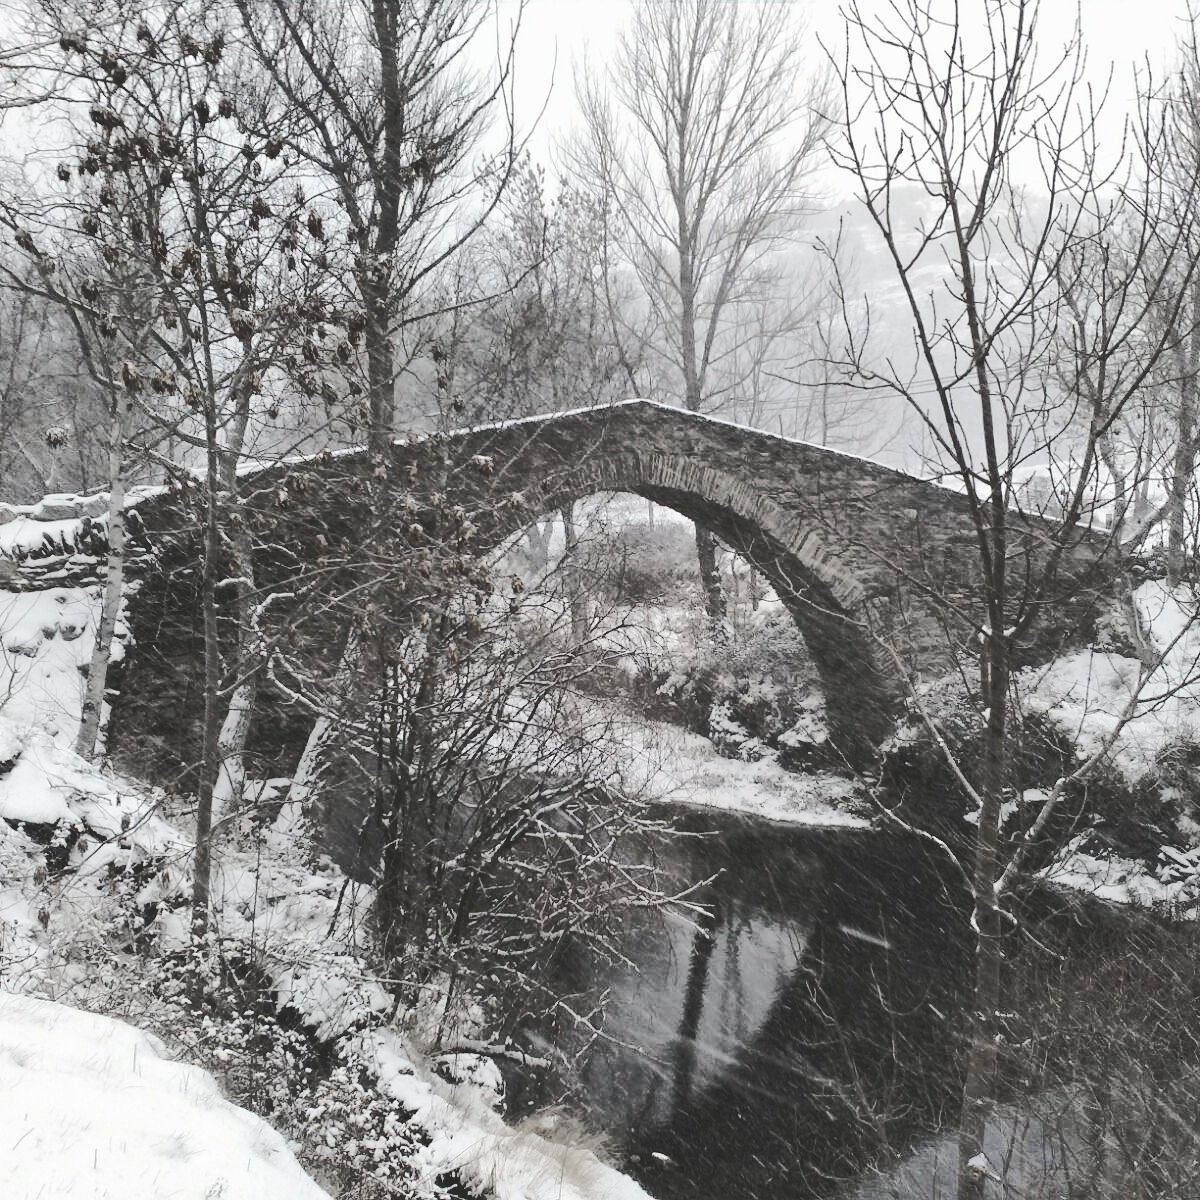 Continua el temporal de #neu al #PNAltPirineu deixant imatges de #postal com el #pontmedieval de #Cassibrós #ValldeCardós #PallarsSobirà